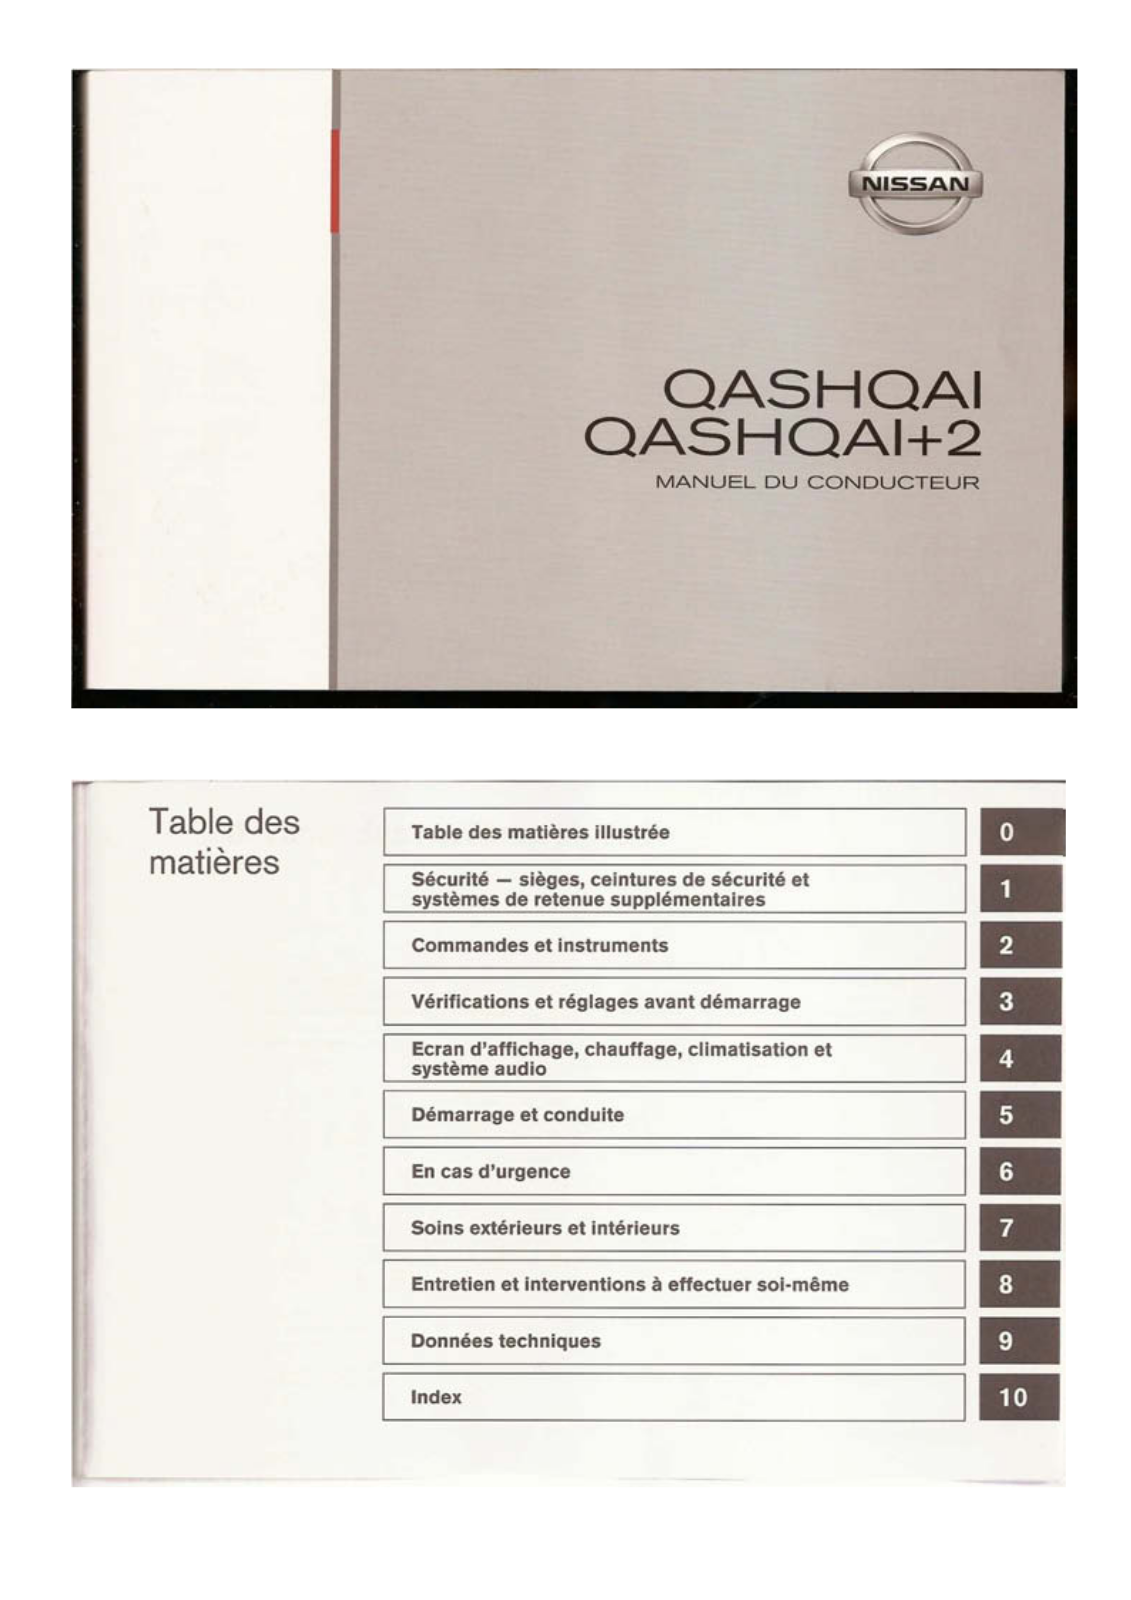 NISSAN Qashqai, Qashqai+2 User Manual